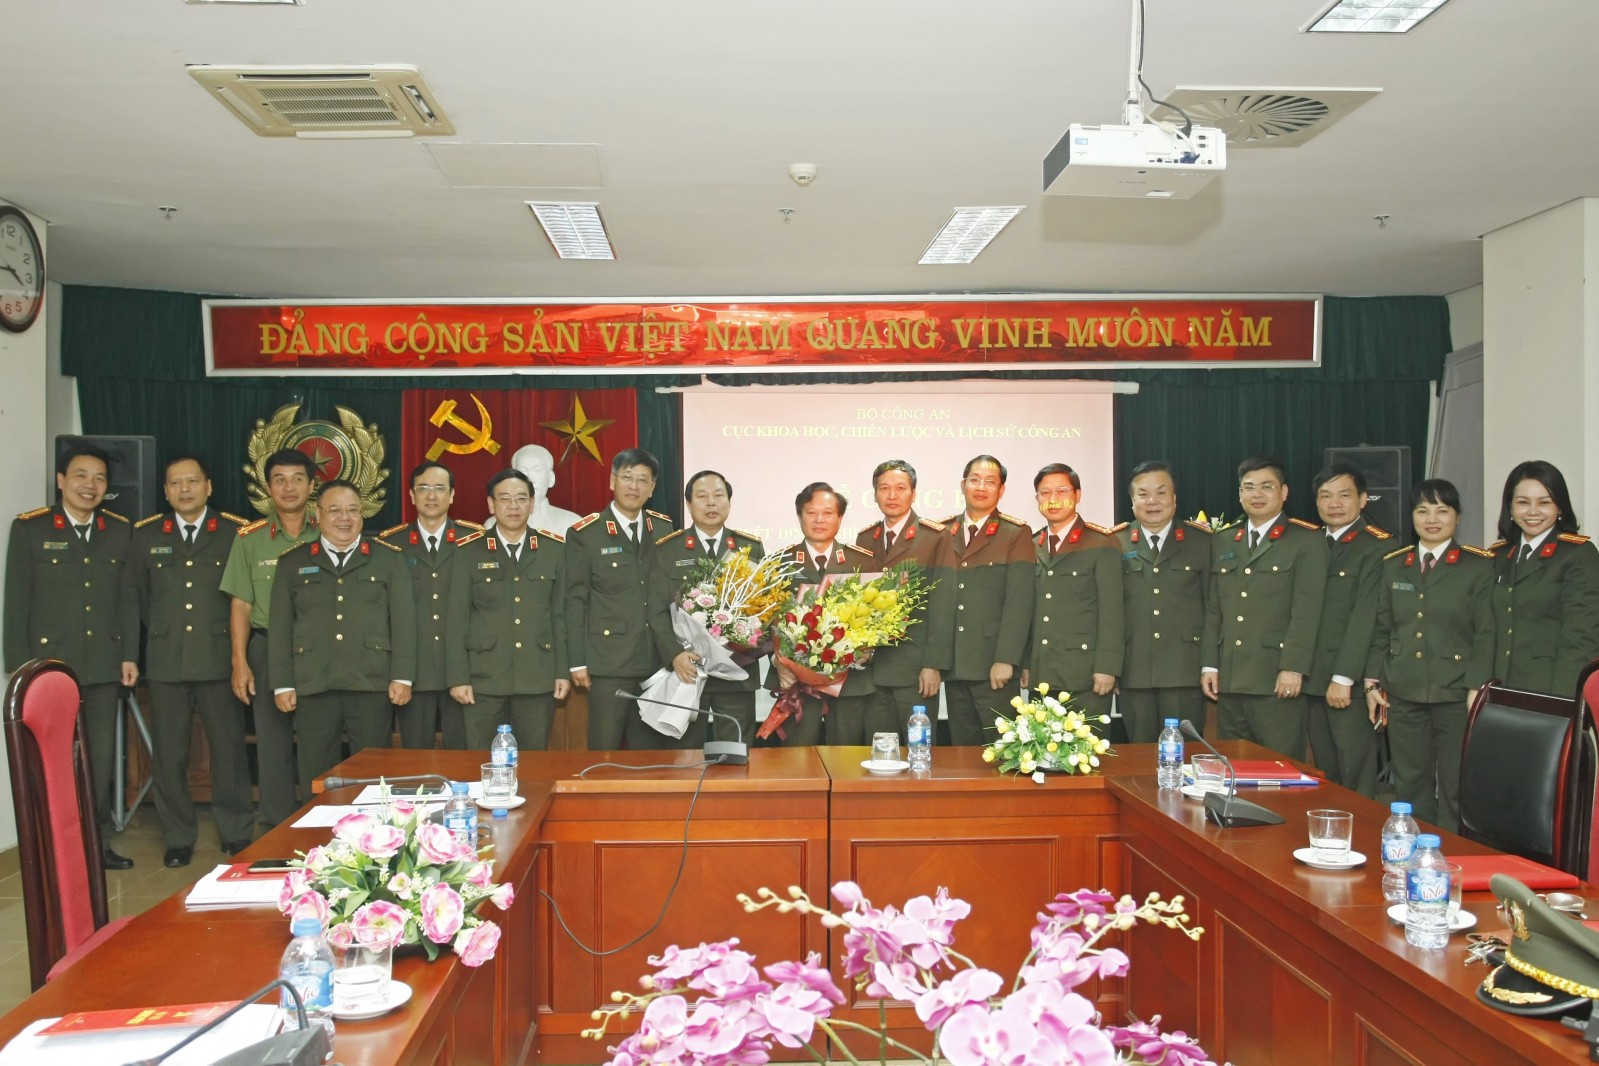 Thiếu tướng Nguyễn Hồng Thái nhận hoa chúc mừng của đồng nghiệp.